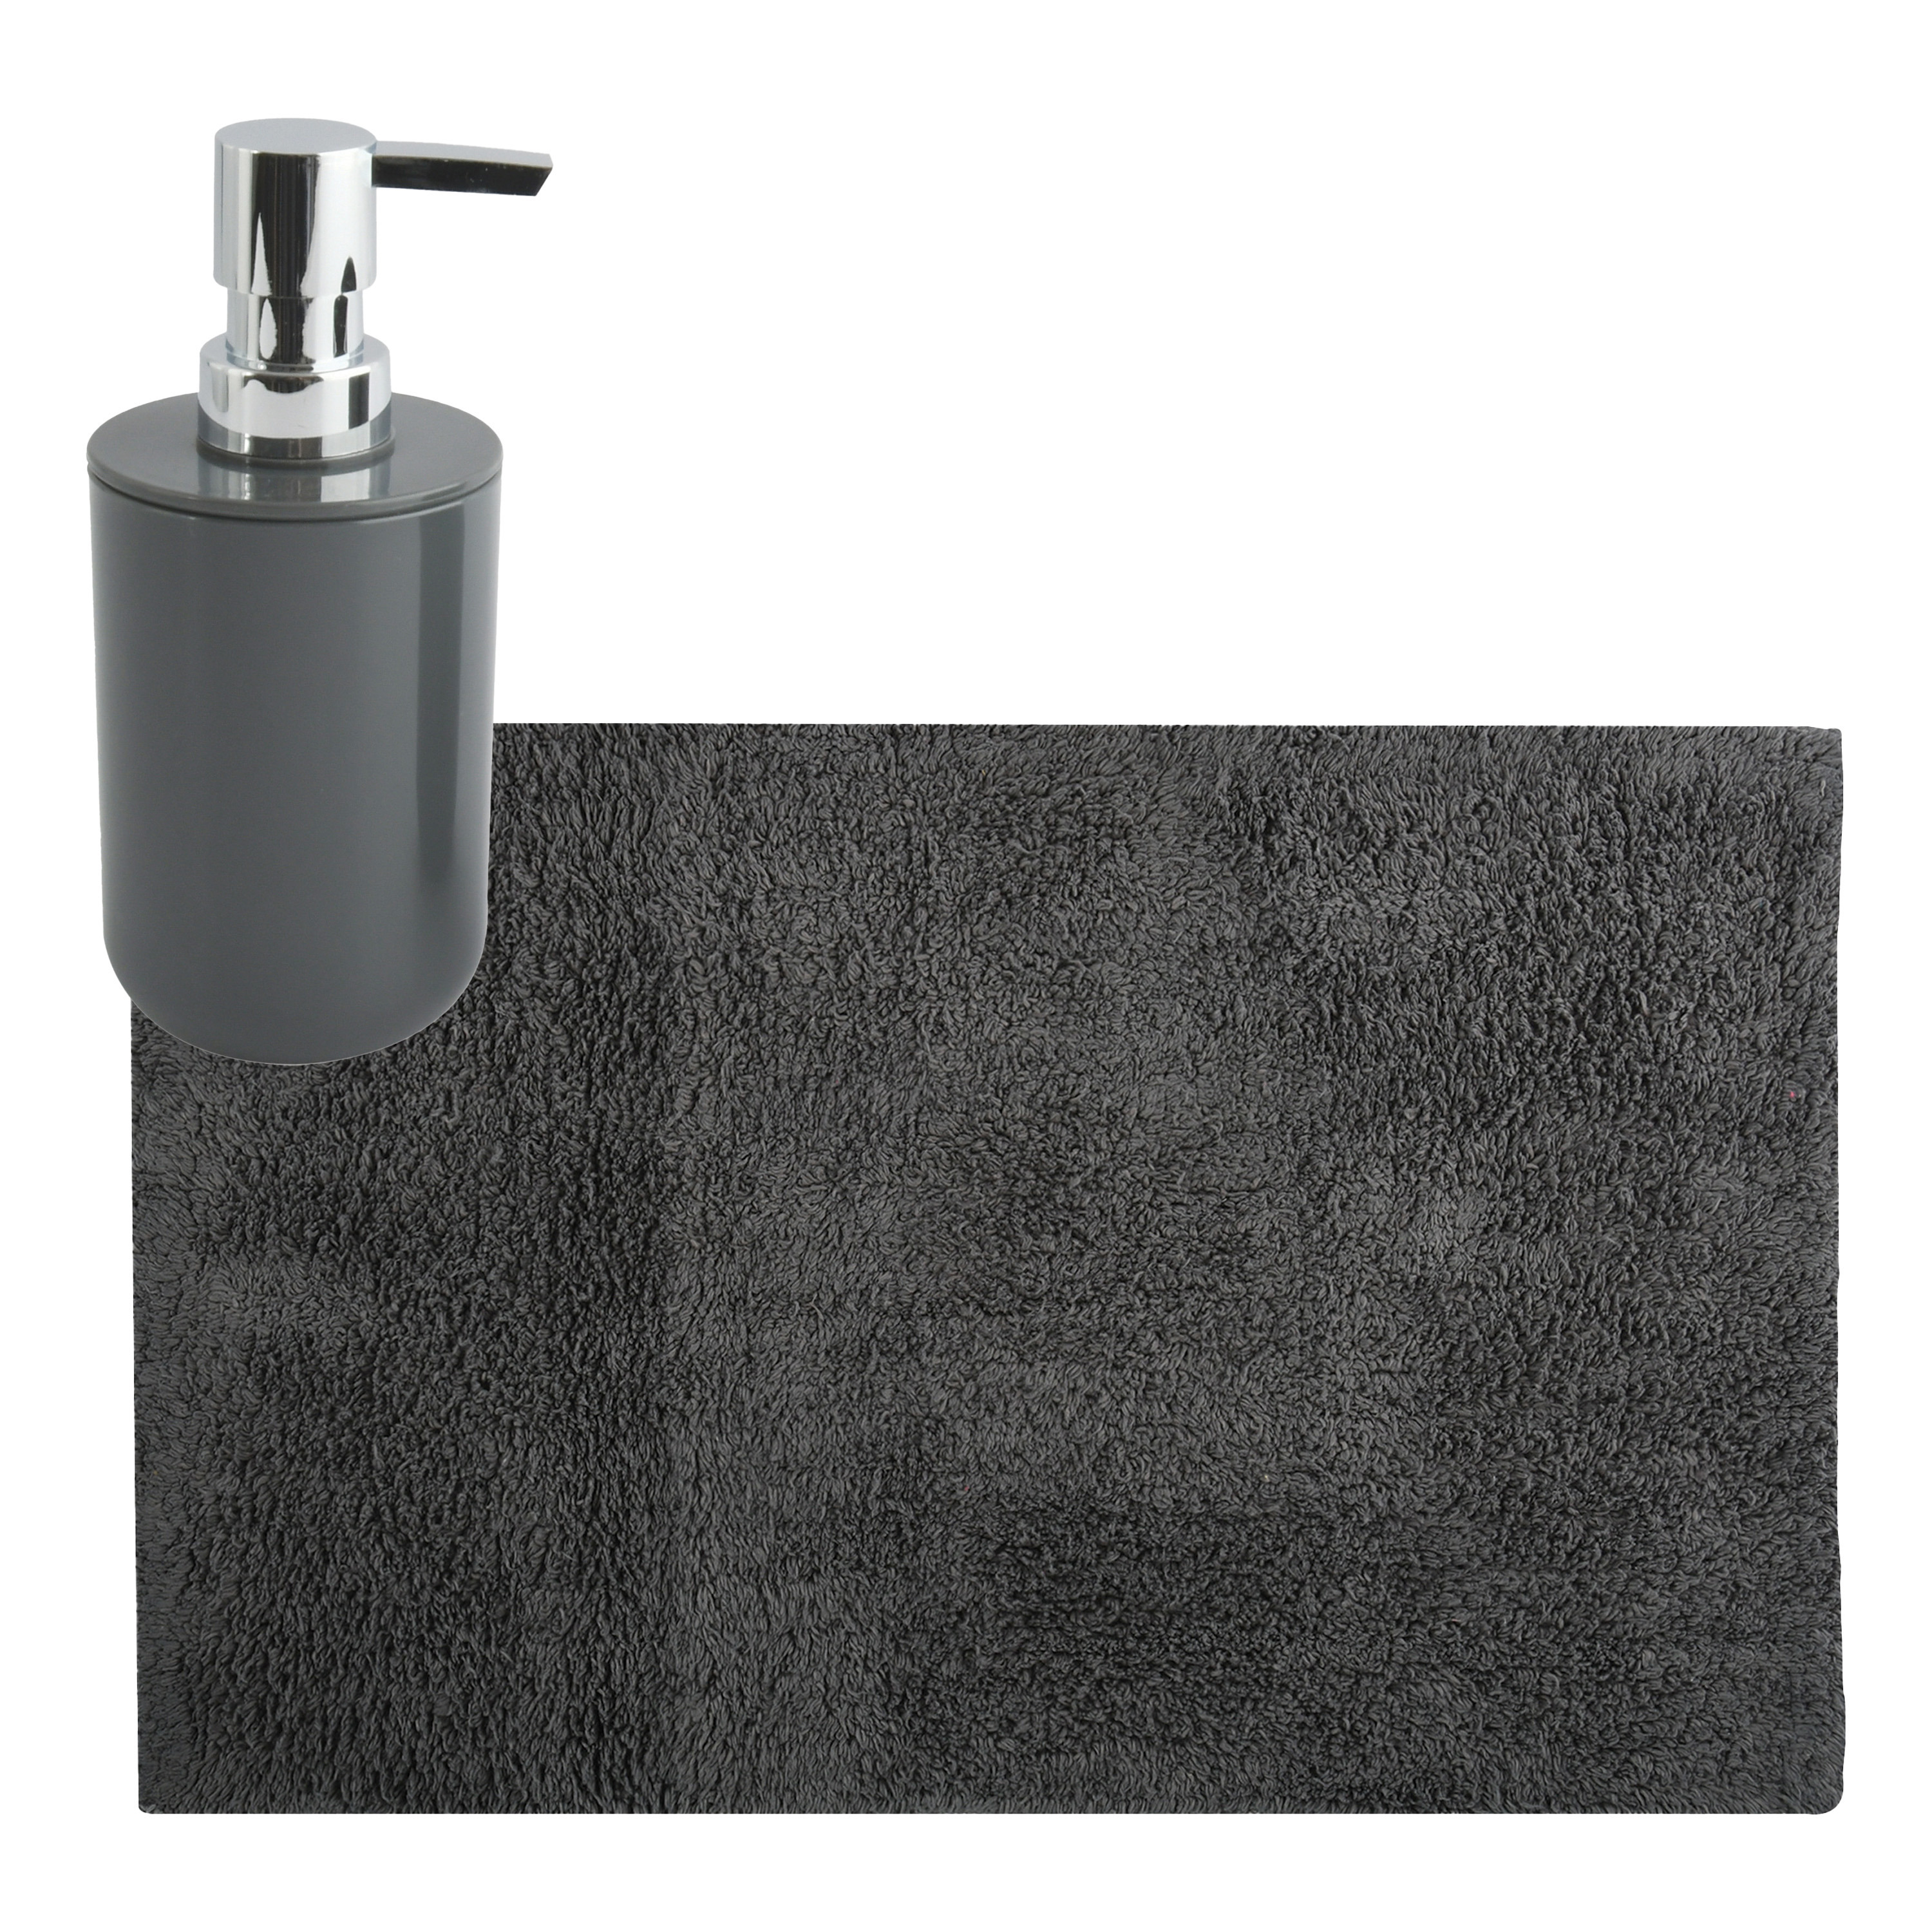 MSV badkamer droogloop mat-tapijt 40 x 60 cm met zelfde kleur zeeppompje donkergrijs